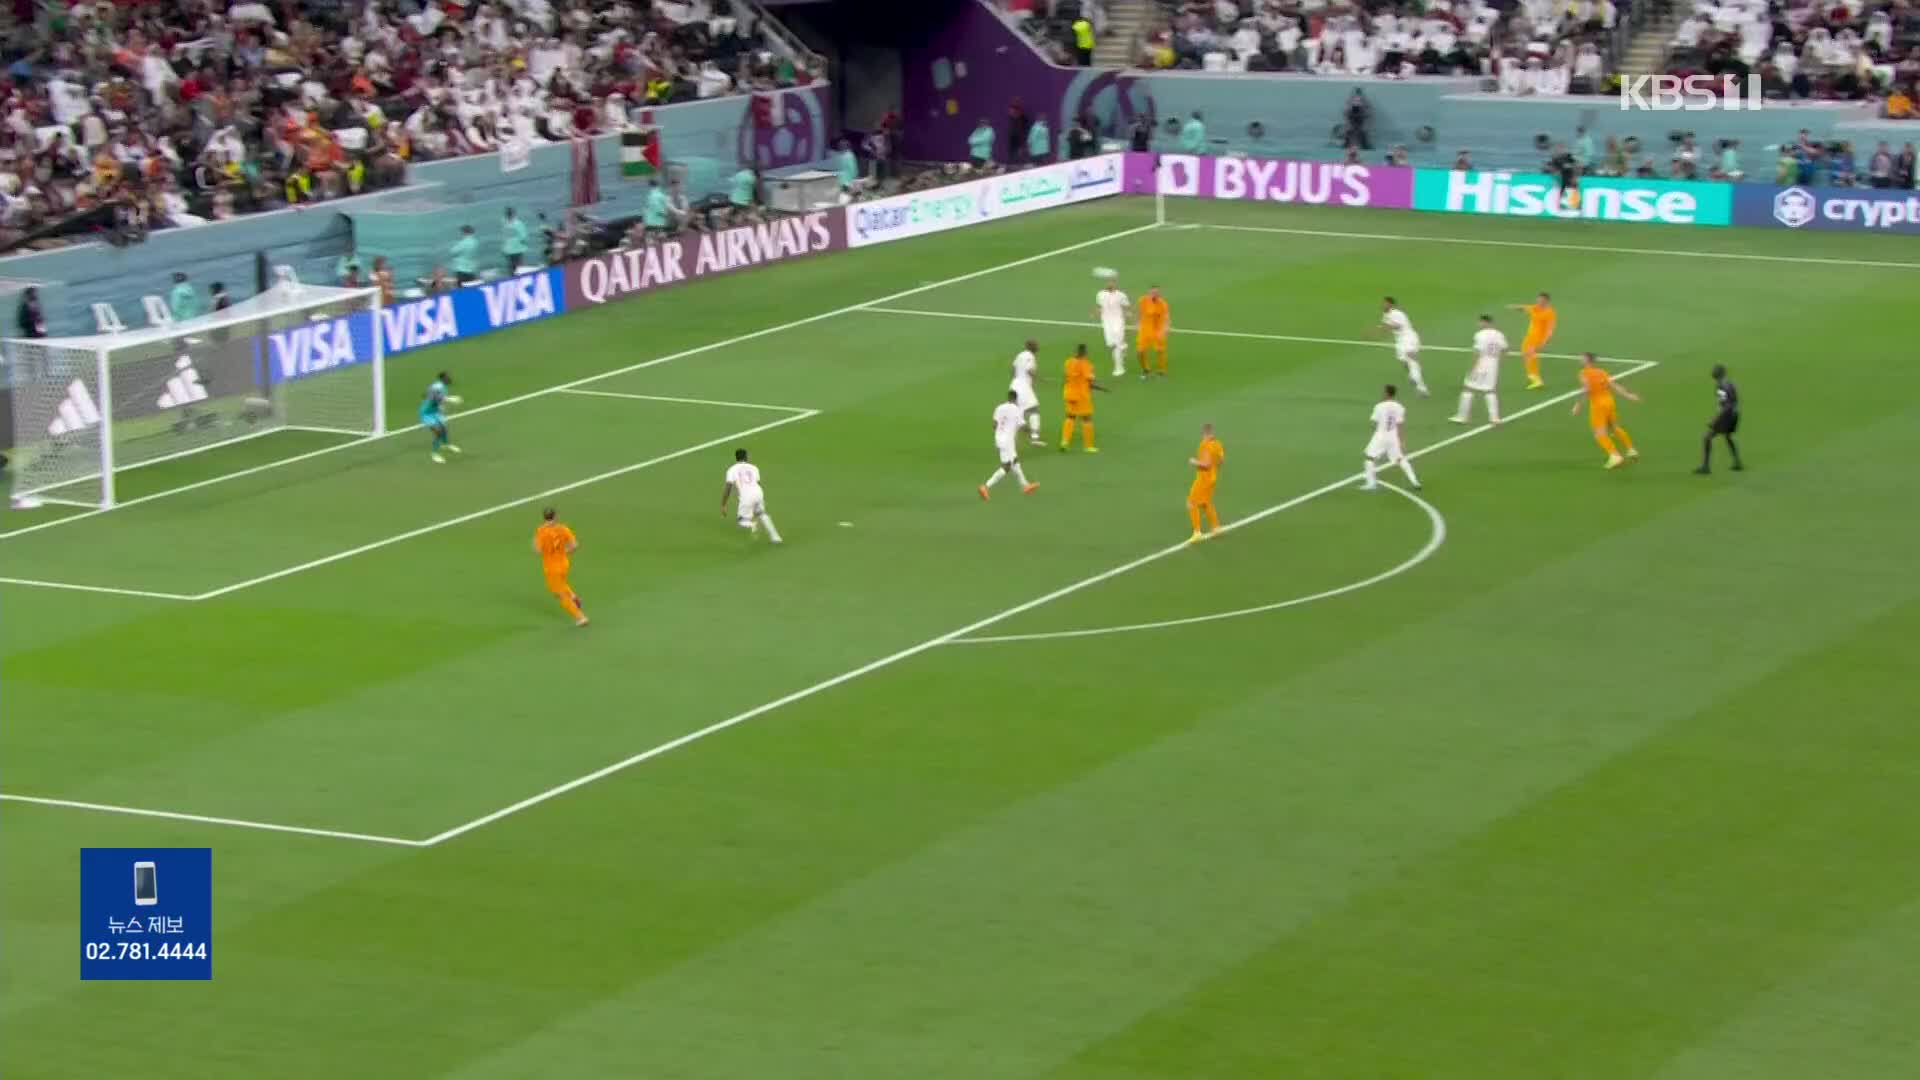 [주요장면] 월드컵 A조 네덜란드 2:0 카타르…네덜란드 16강